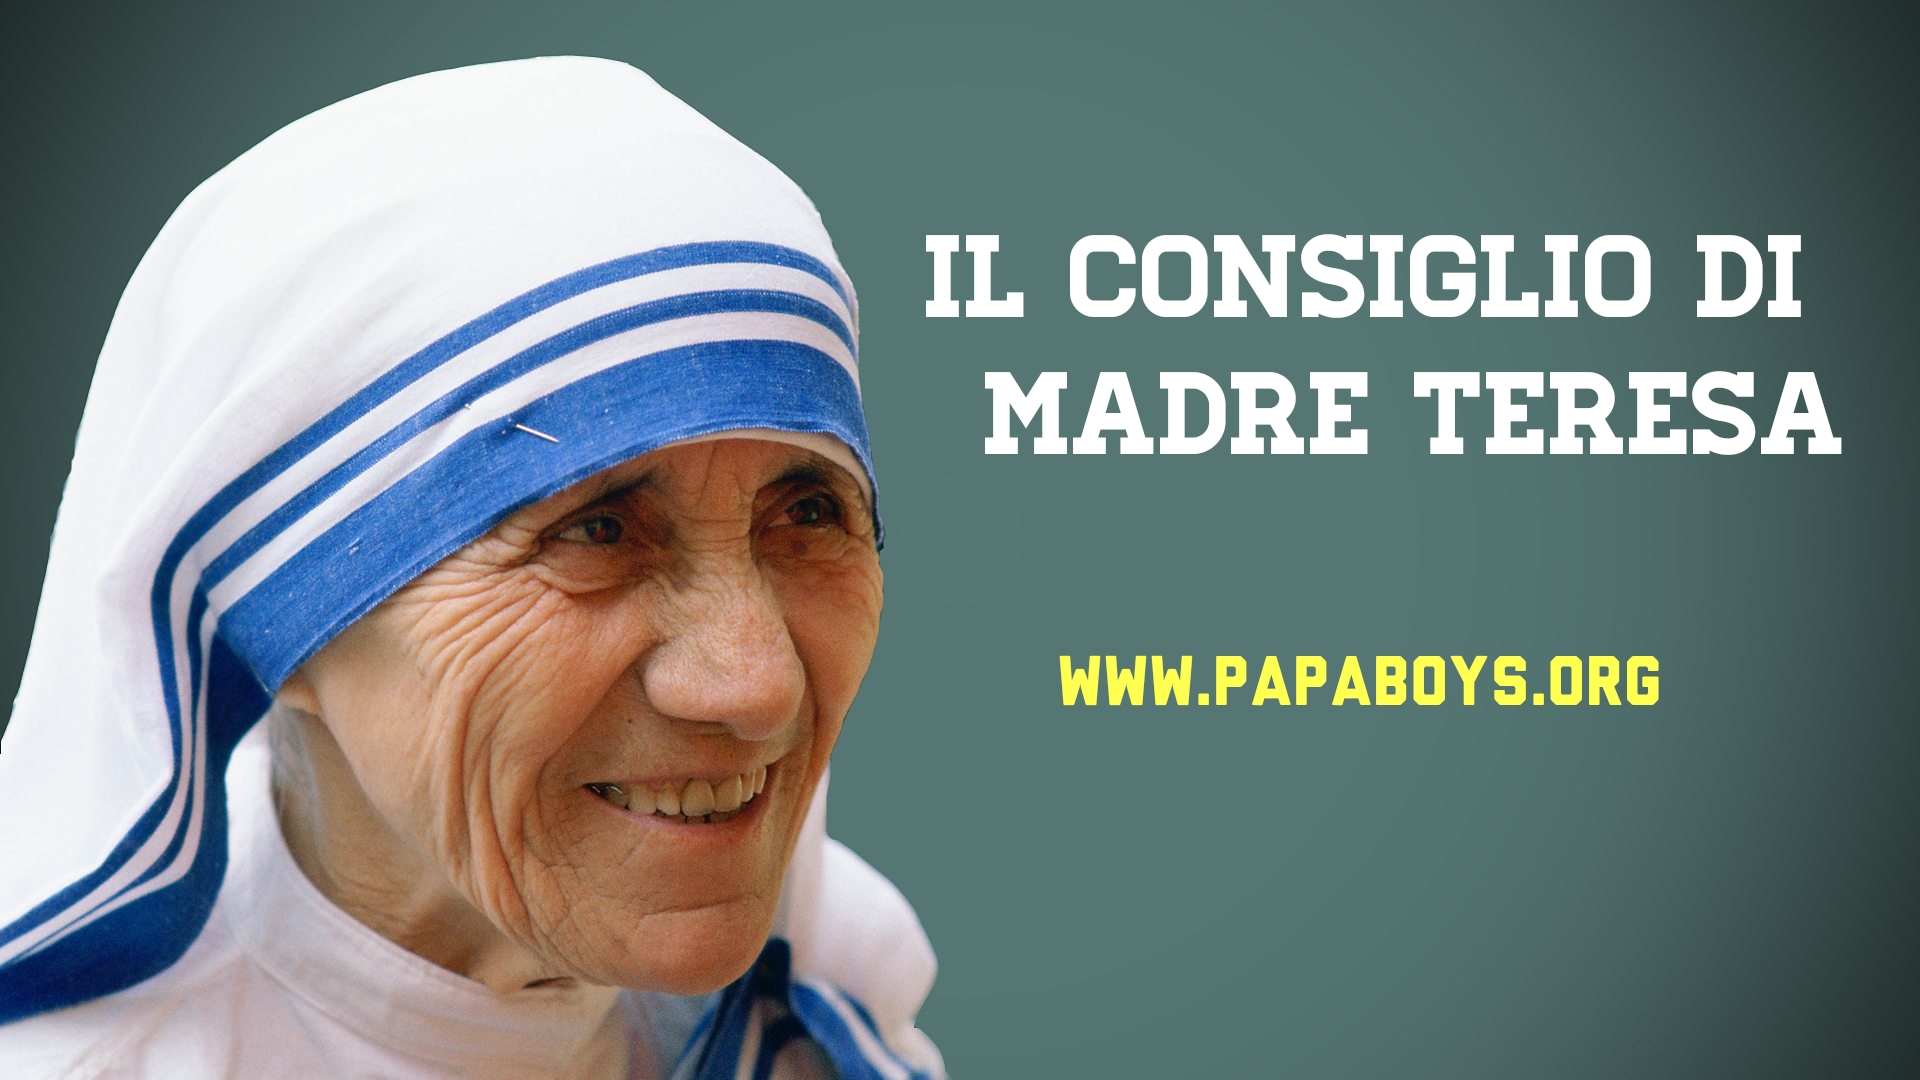 Il Consiglio Di Madre Teresa 11 Gennaio 19 Papaboys 3 0